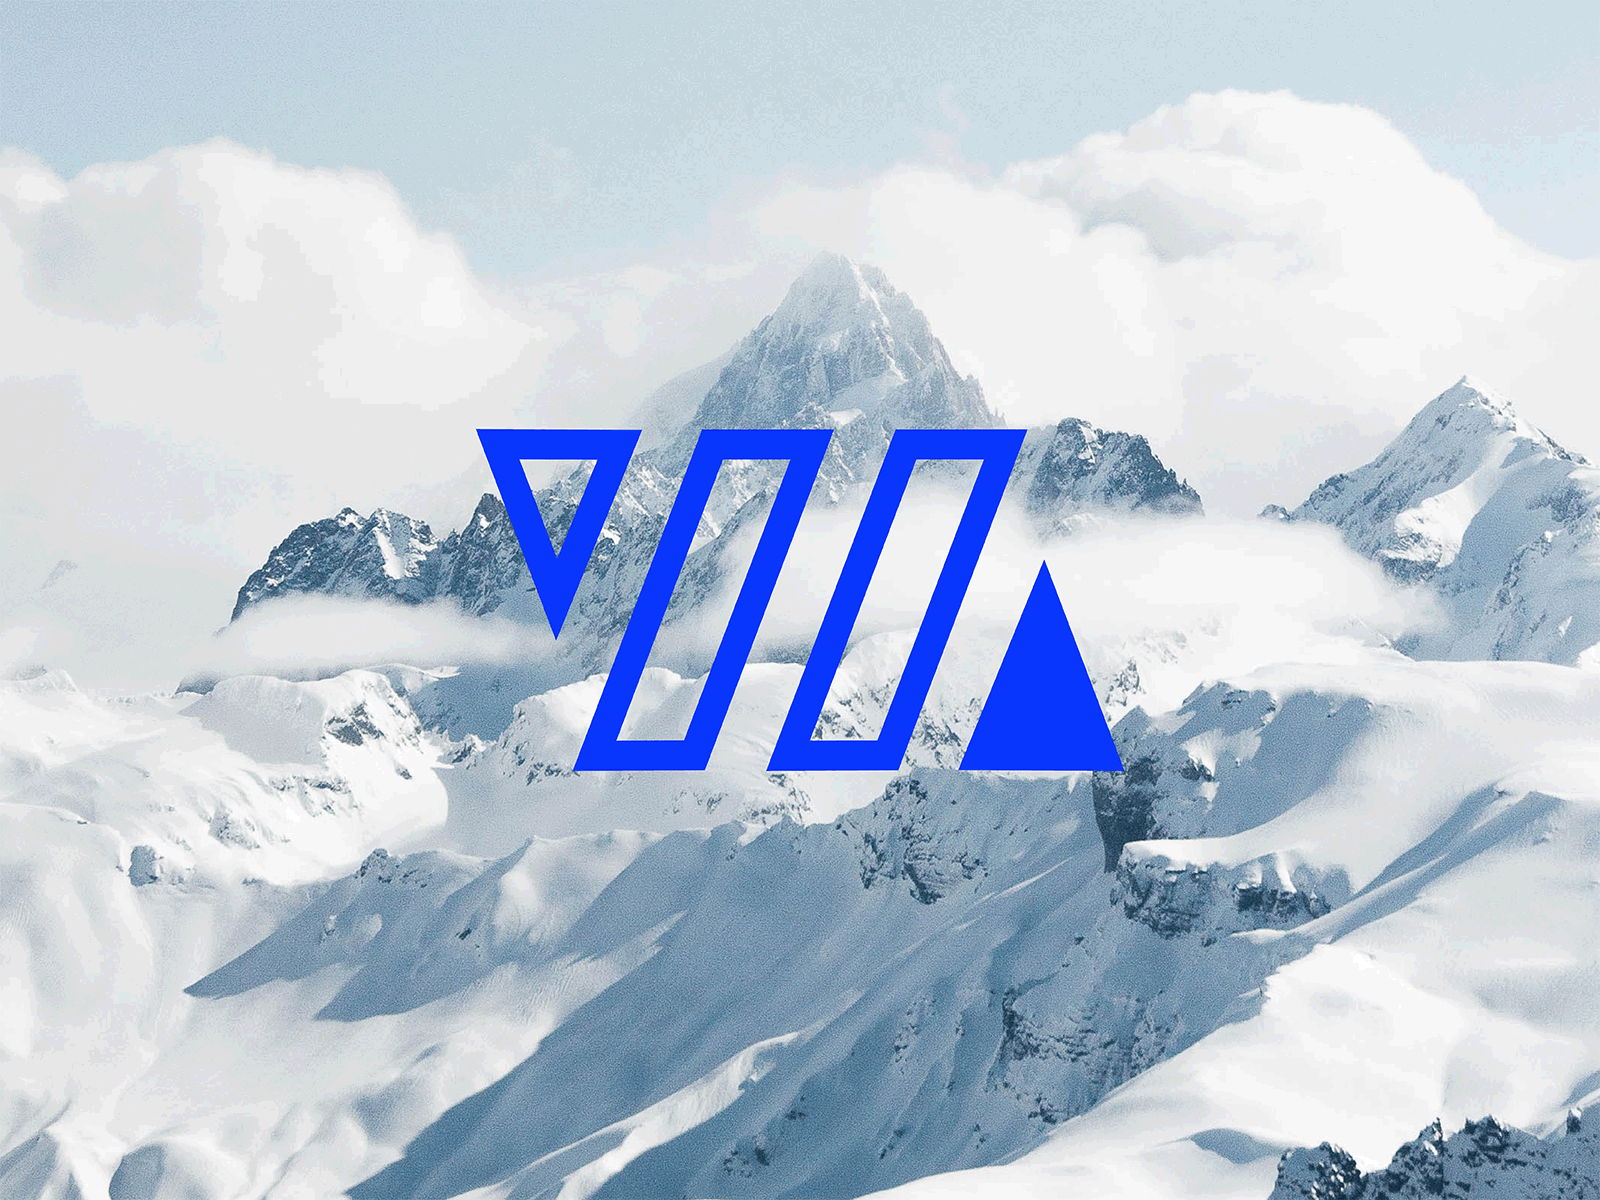 Wild Mountain design geometric icon logo mountain